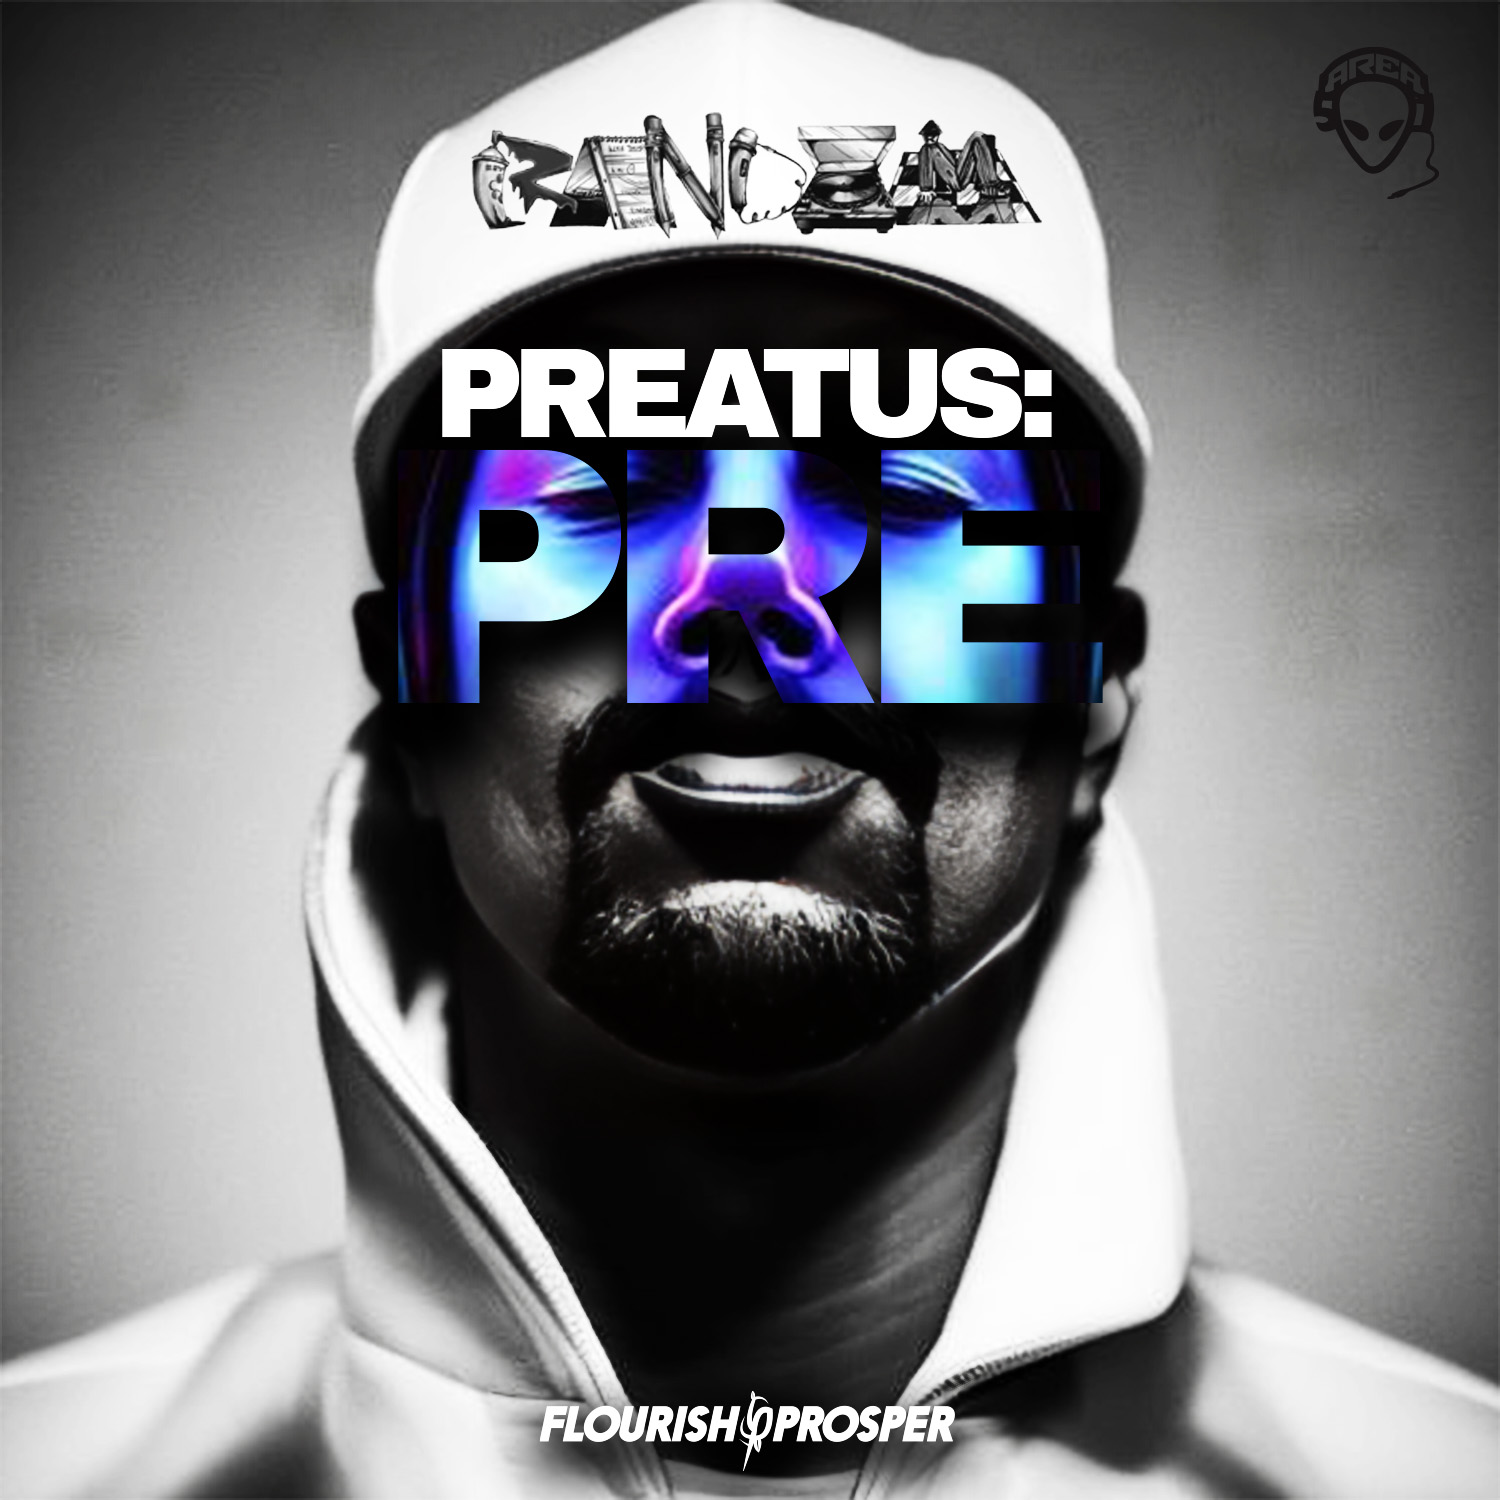 Flourish$Prosper Music Group Announces MC Random's Album "Preatus: PRE" Dropping in March